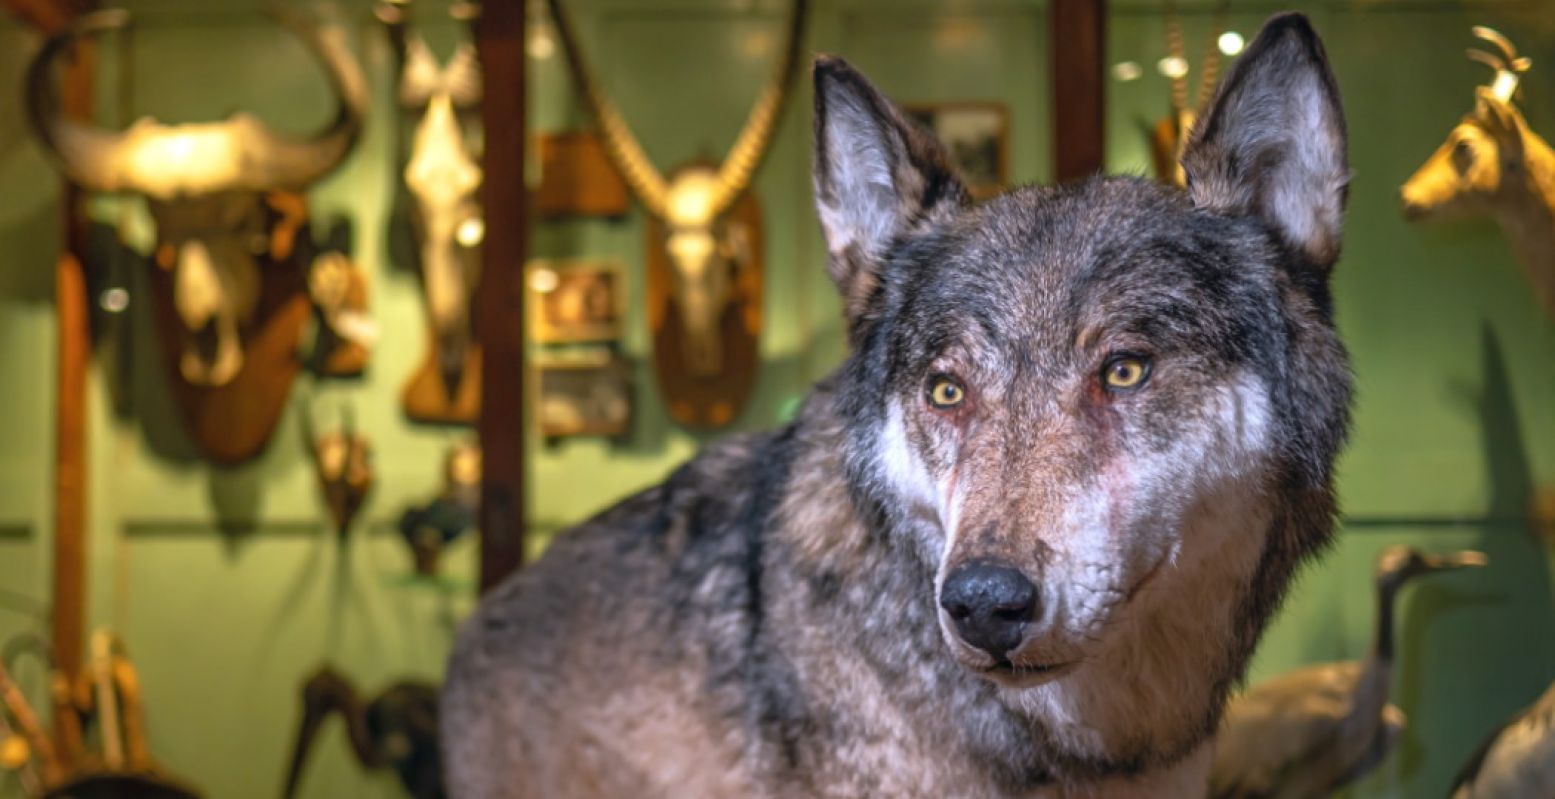 Leer de wolf kennen en vorm een mening over zijn plek in ons kleine landje. Foto: Museum Natura Docet